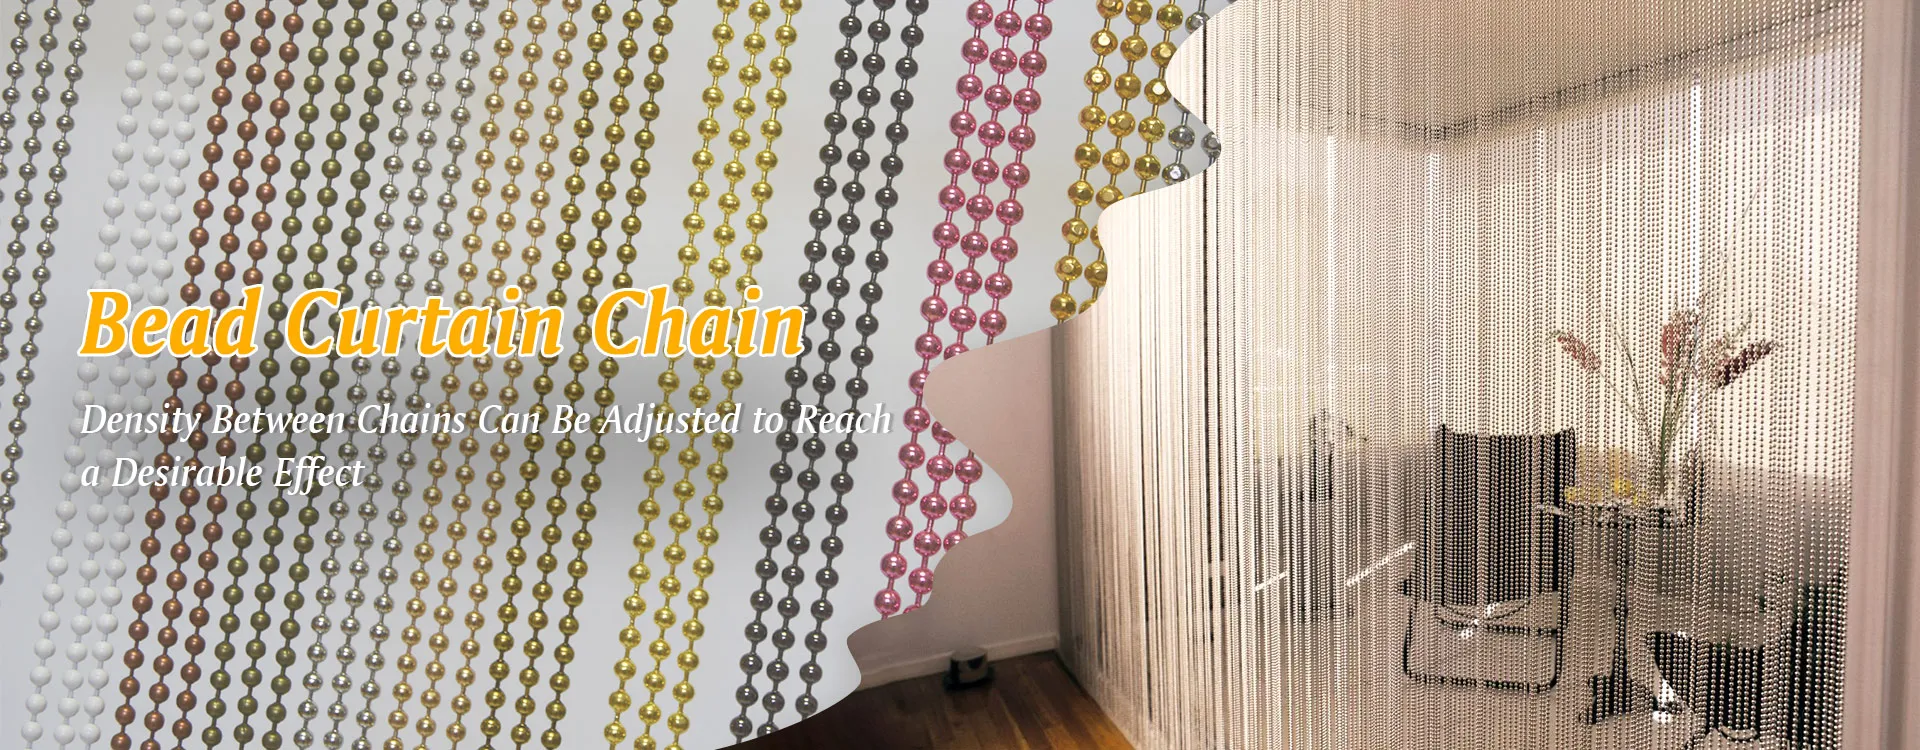 Bead Curtain Chain